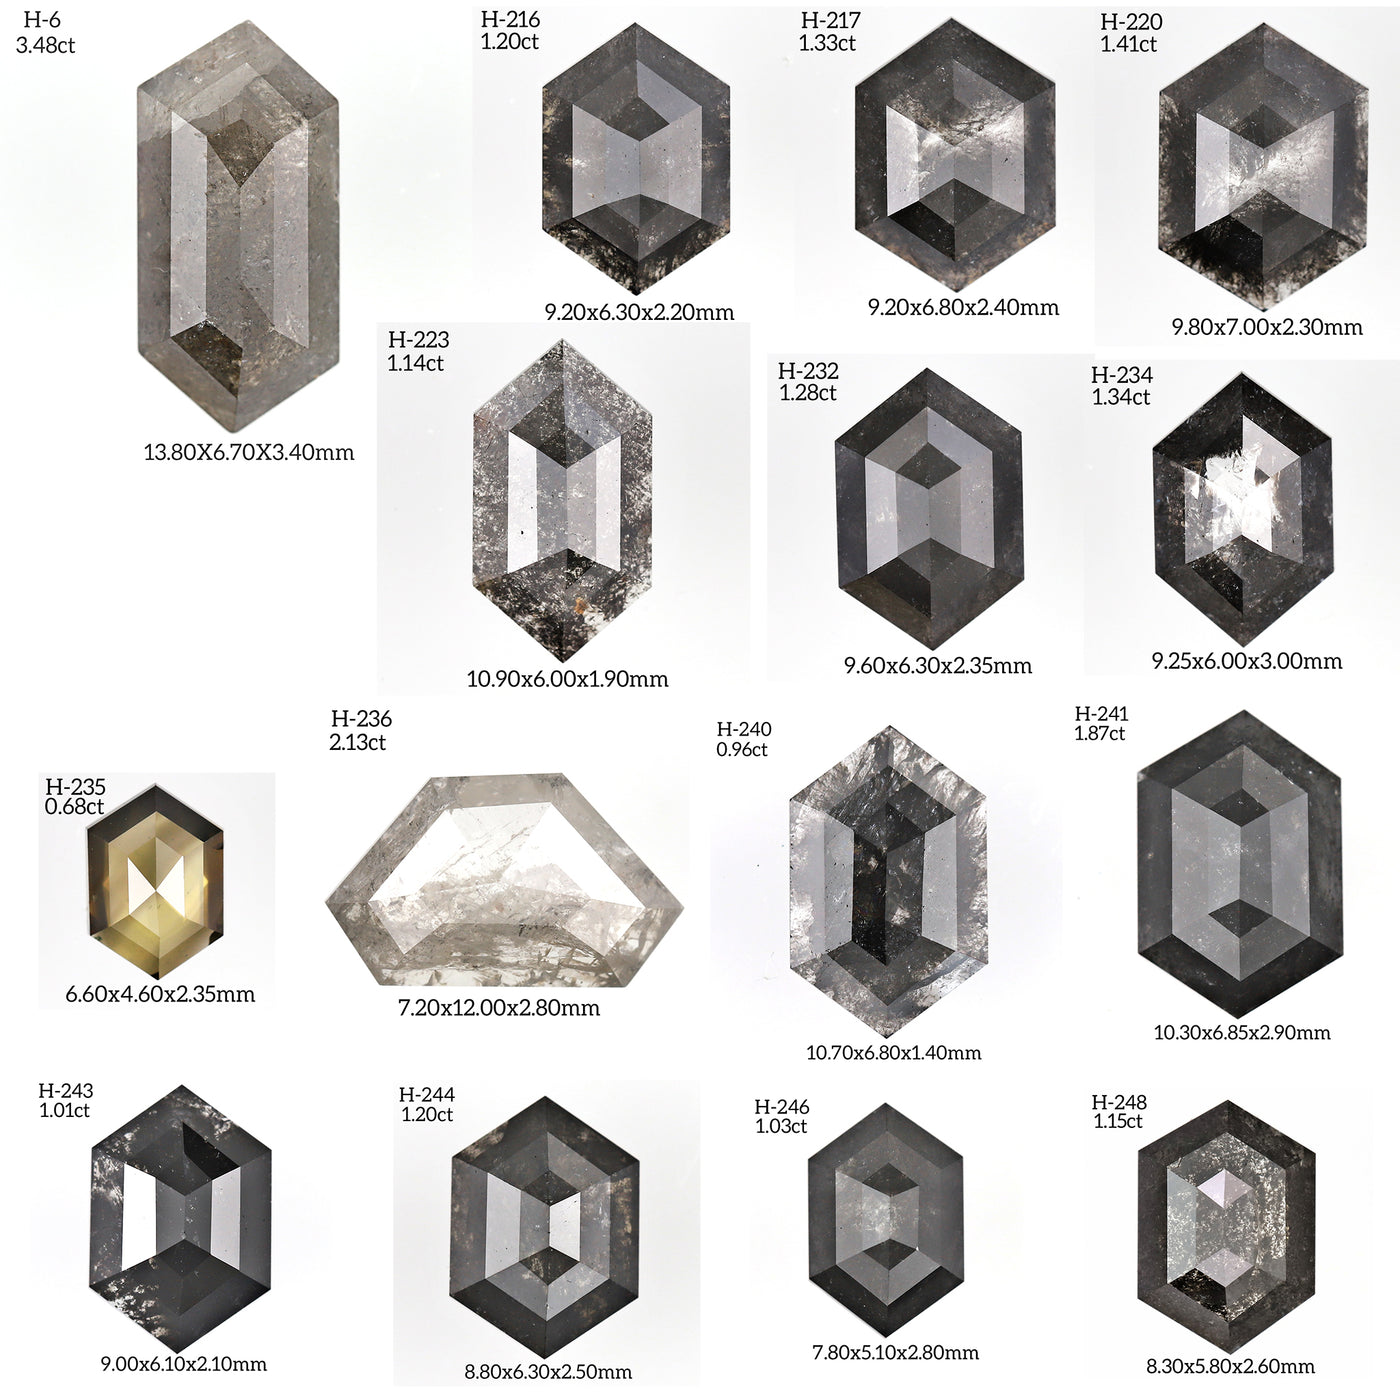 H248 - Salt and pepper hexagon diamond